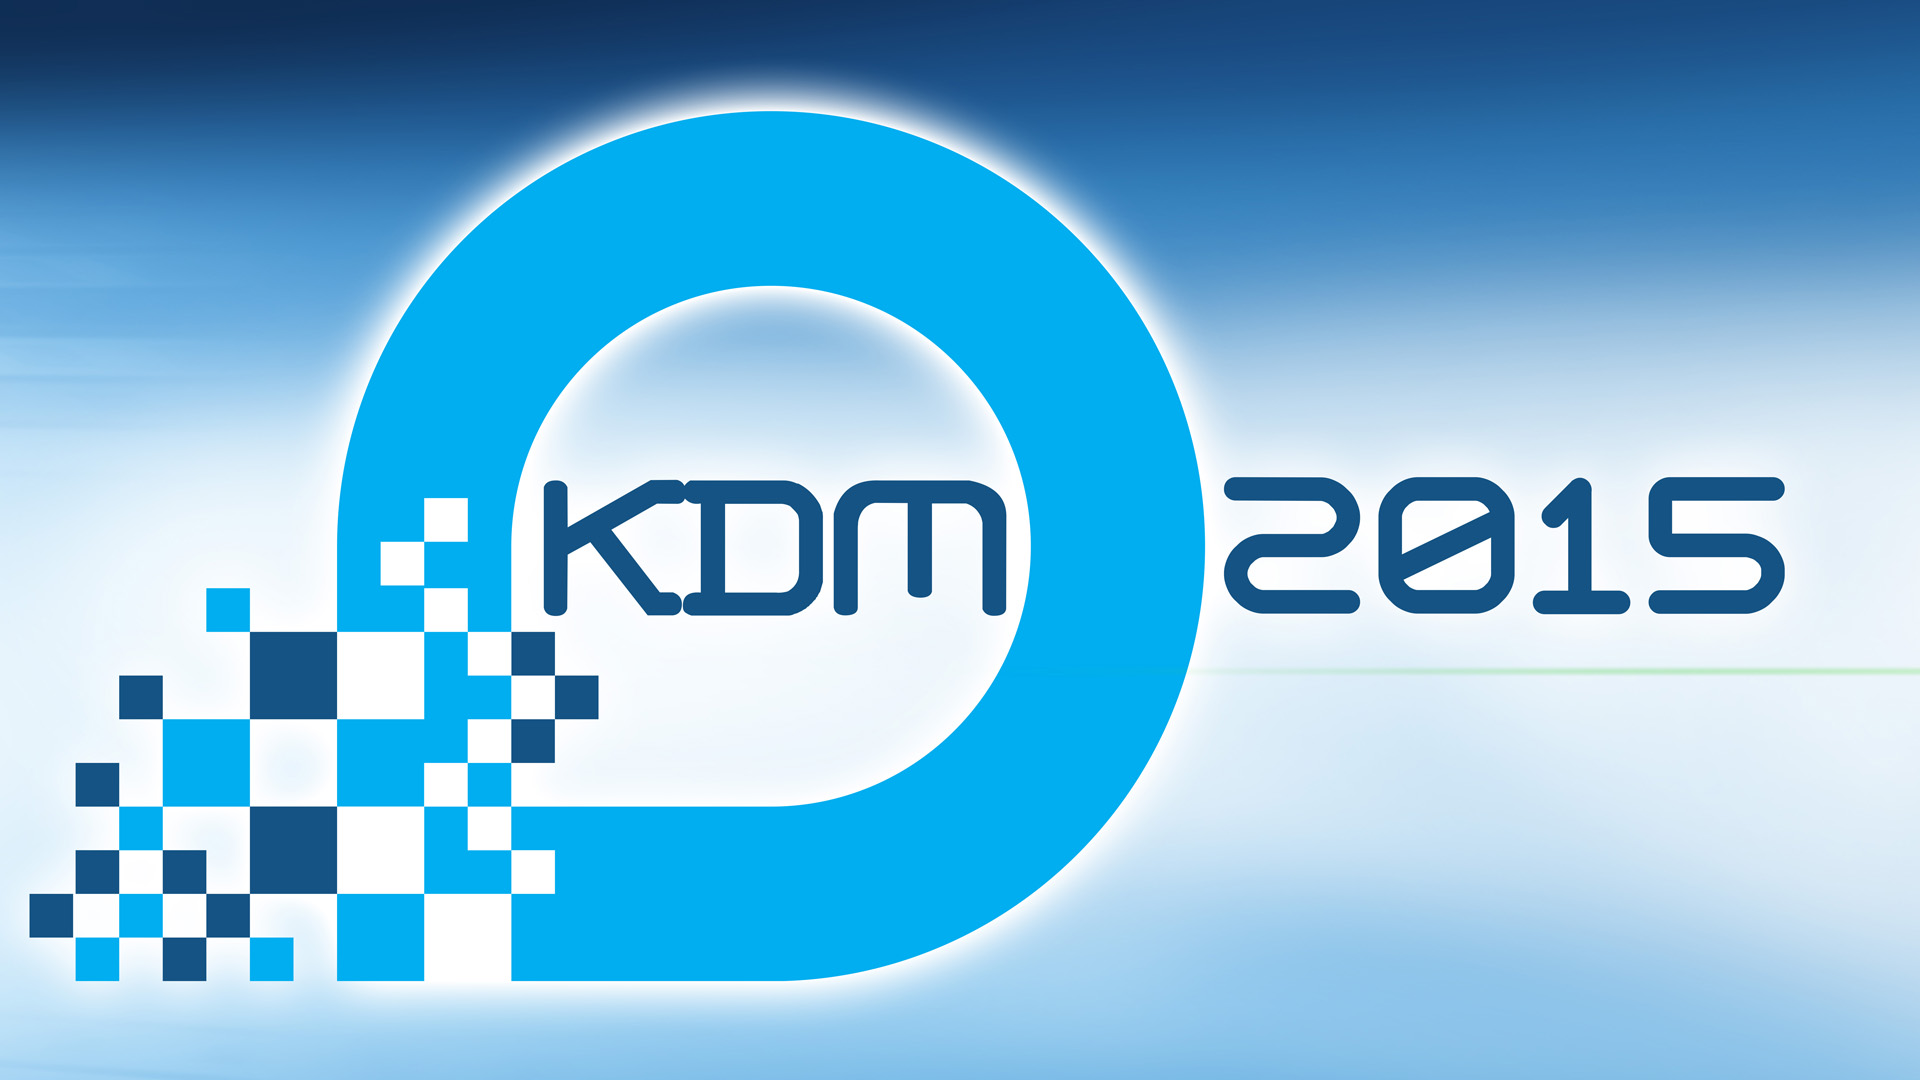 Konferencja Użytkowników KDM 2015